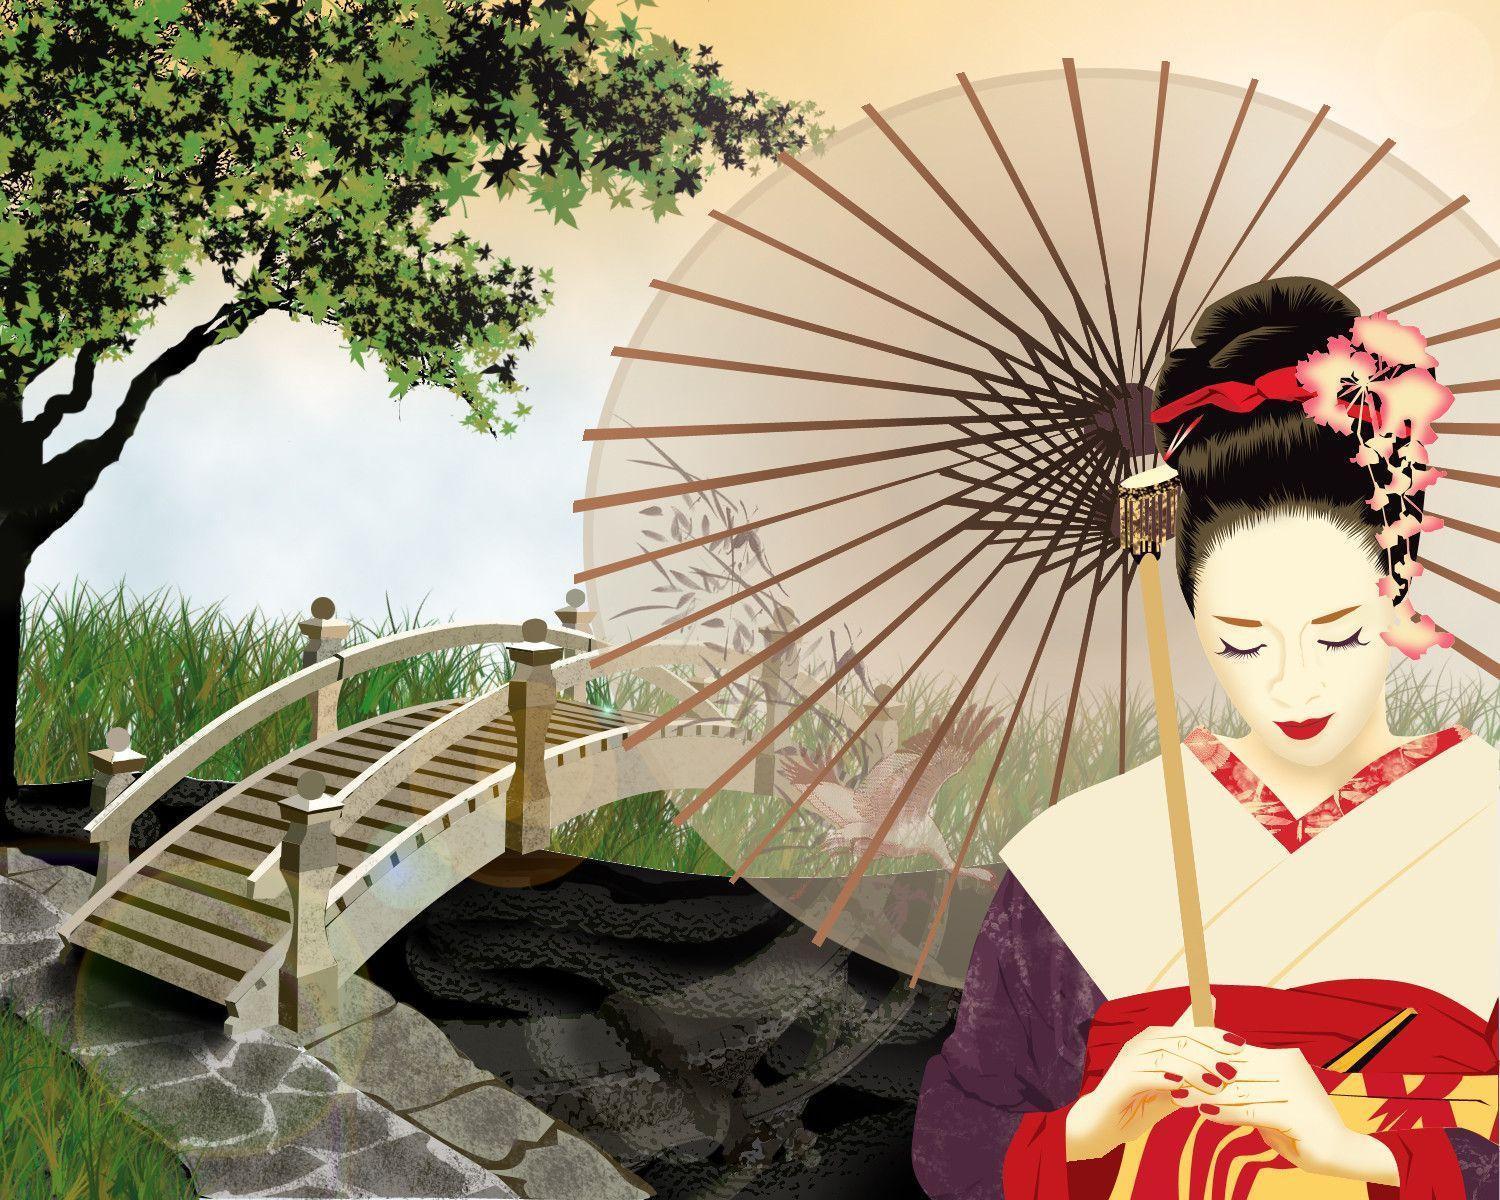 memoirs of a geisha